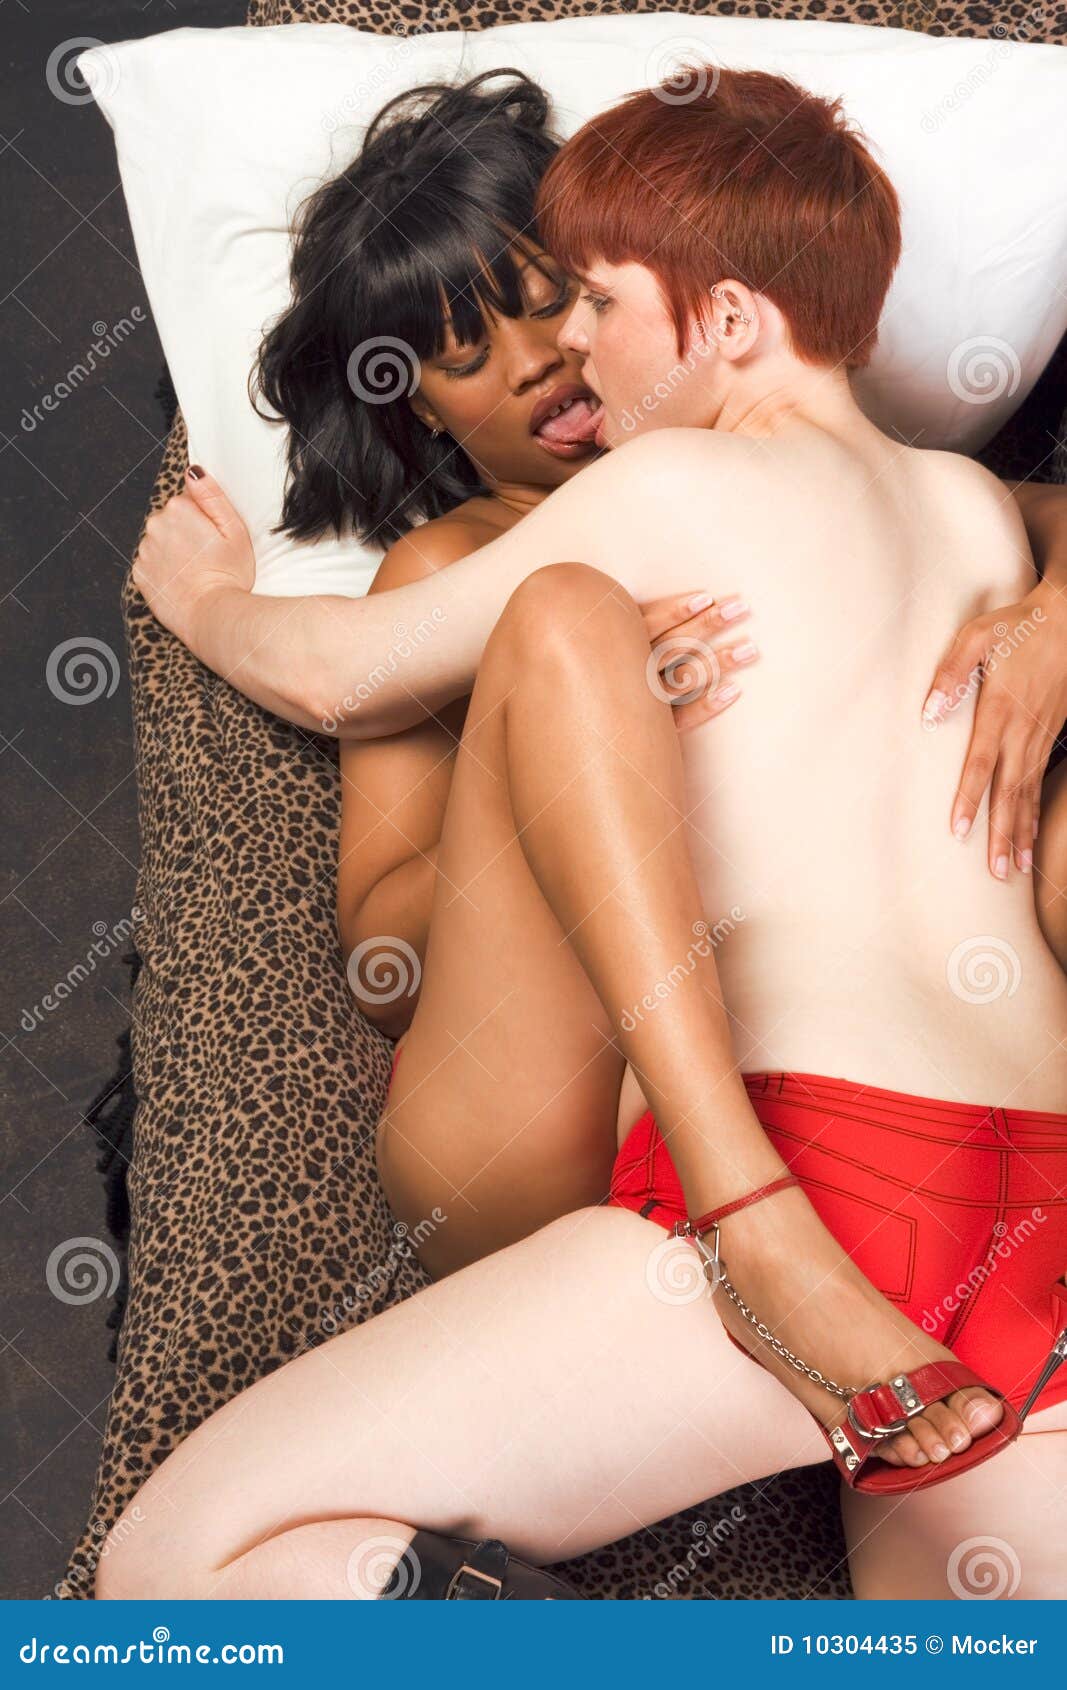 Interracial Lesbians Kissing - Busty bleck girls blogs ...